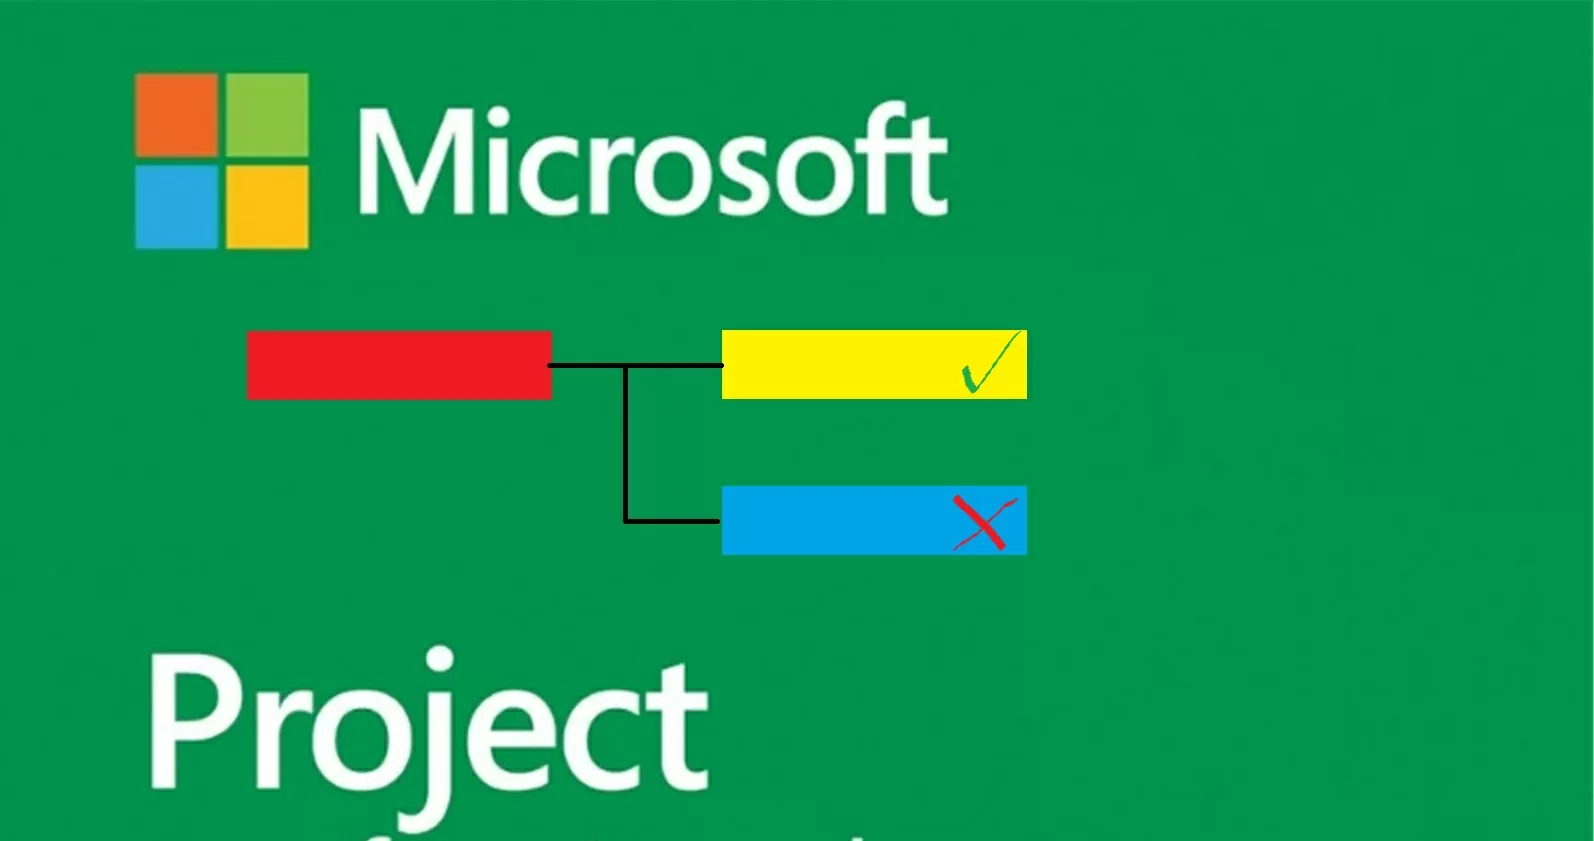 Sut i sefydlu Mathau o Dasg yn Microsoft Project